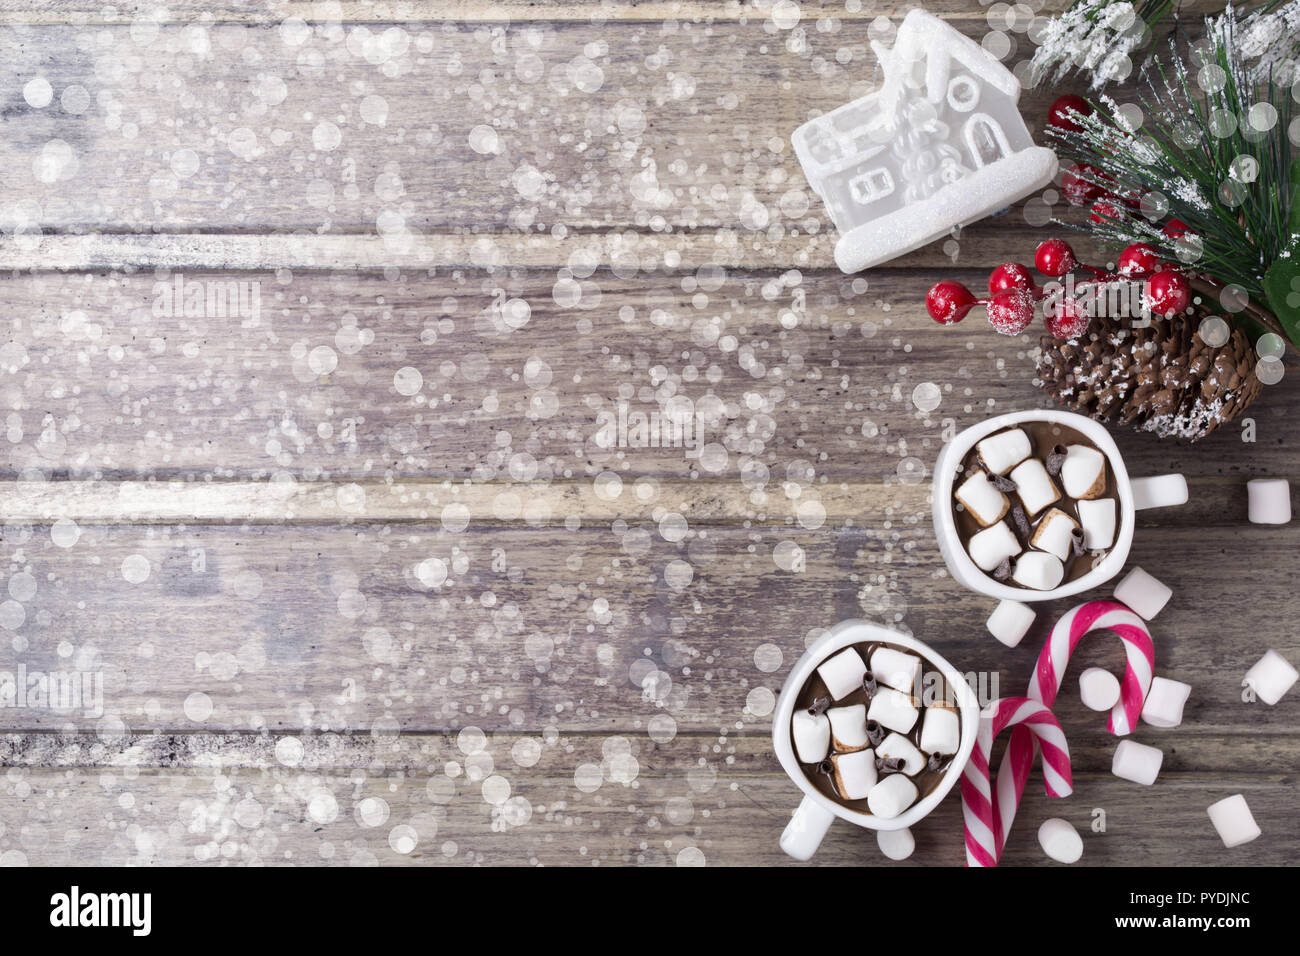 Natale ancora in vita - due tazze di cioccolata calda con marshmallow, caramelle, casa del giocattolo e il ramo di abete con bacche. Spazio di copia Foto Stock